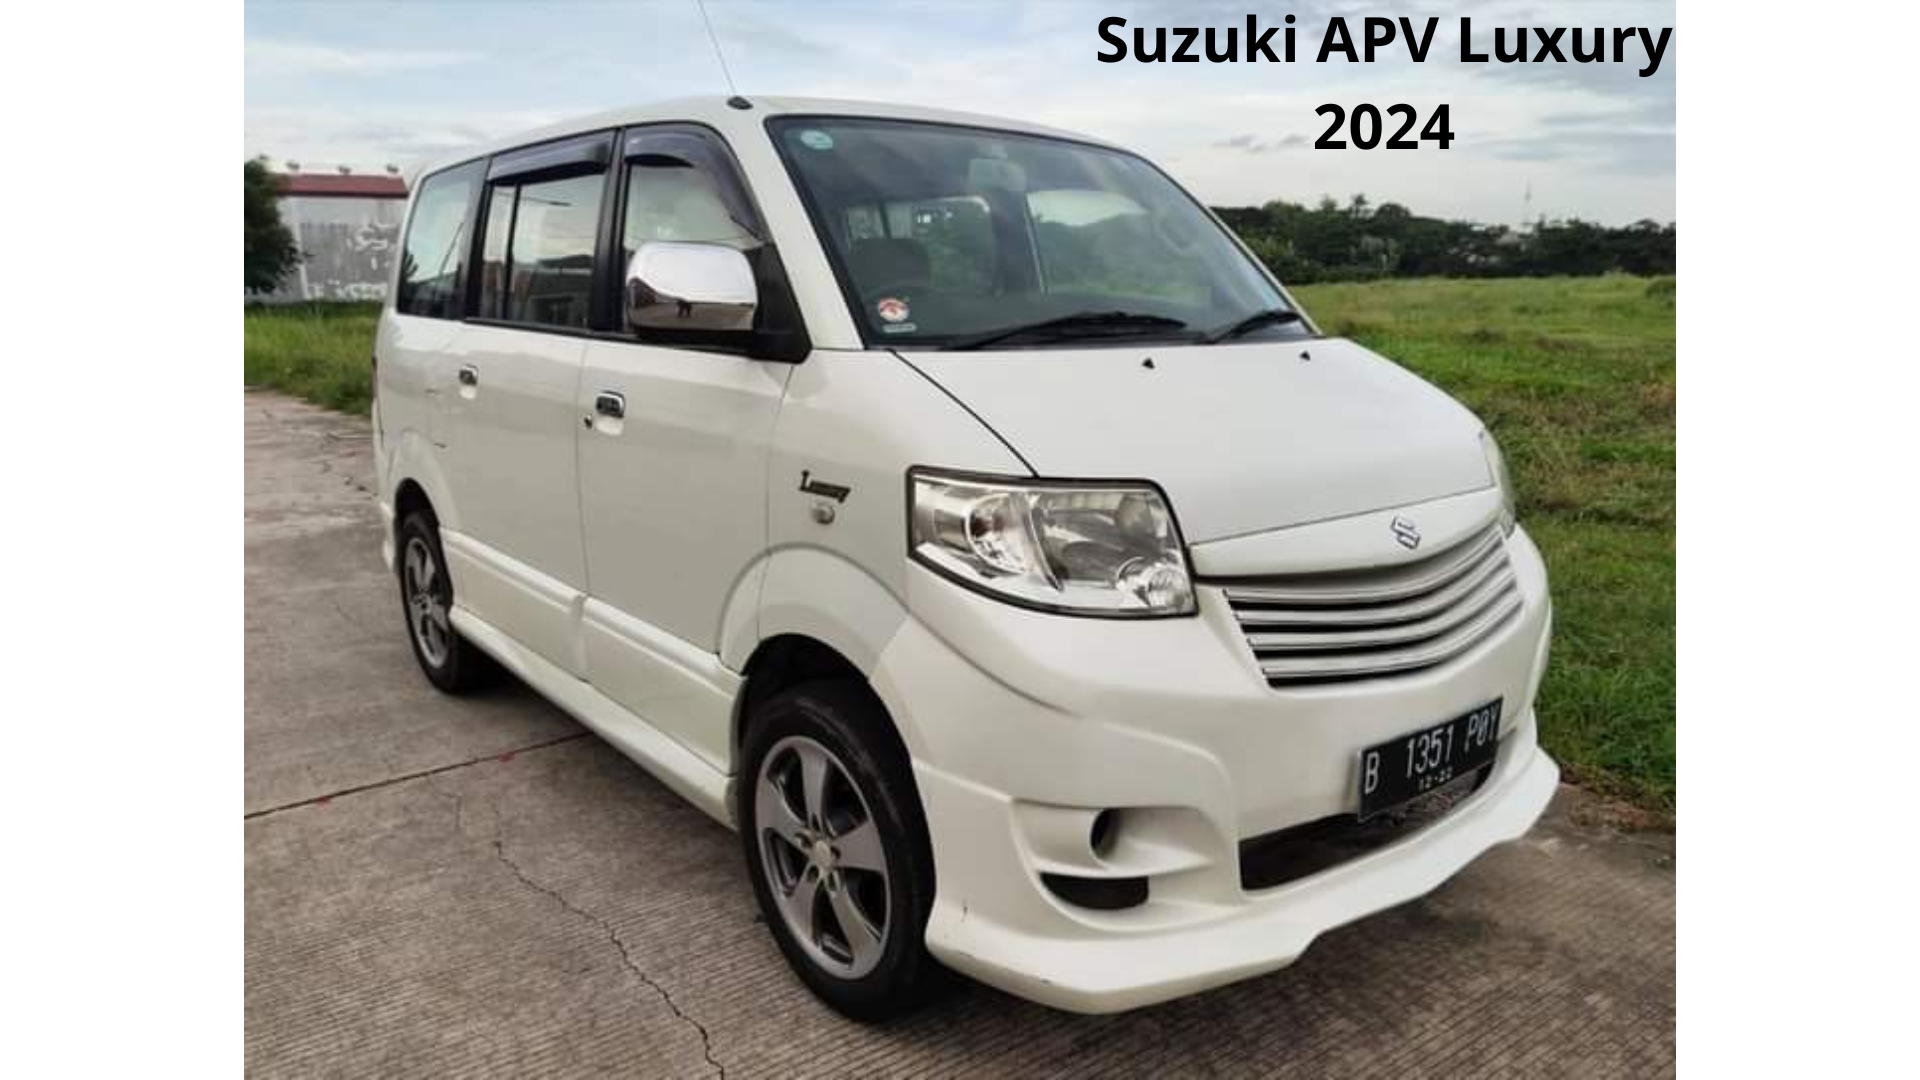 Suzuki APV Luxury 2024 di Kenal Kalangan Serba Ada dan Serba Bisa, Begini Reviewnya